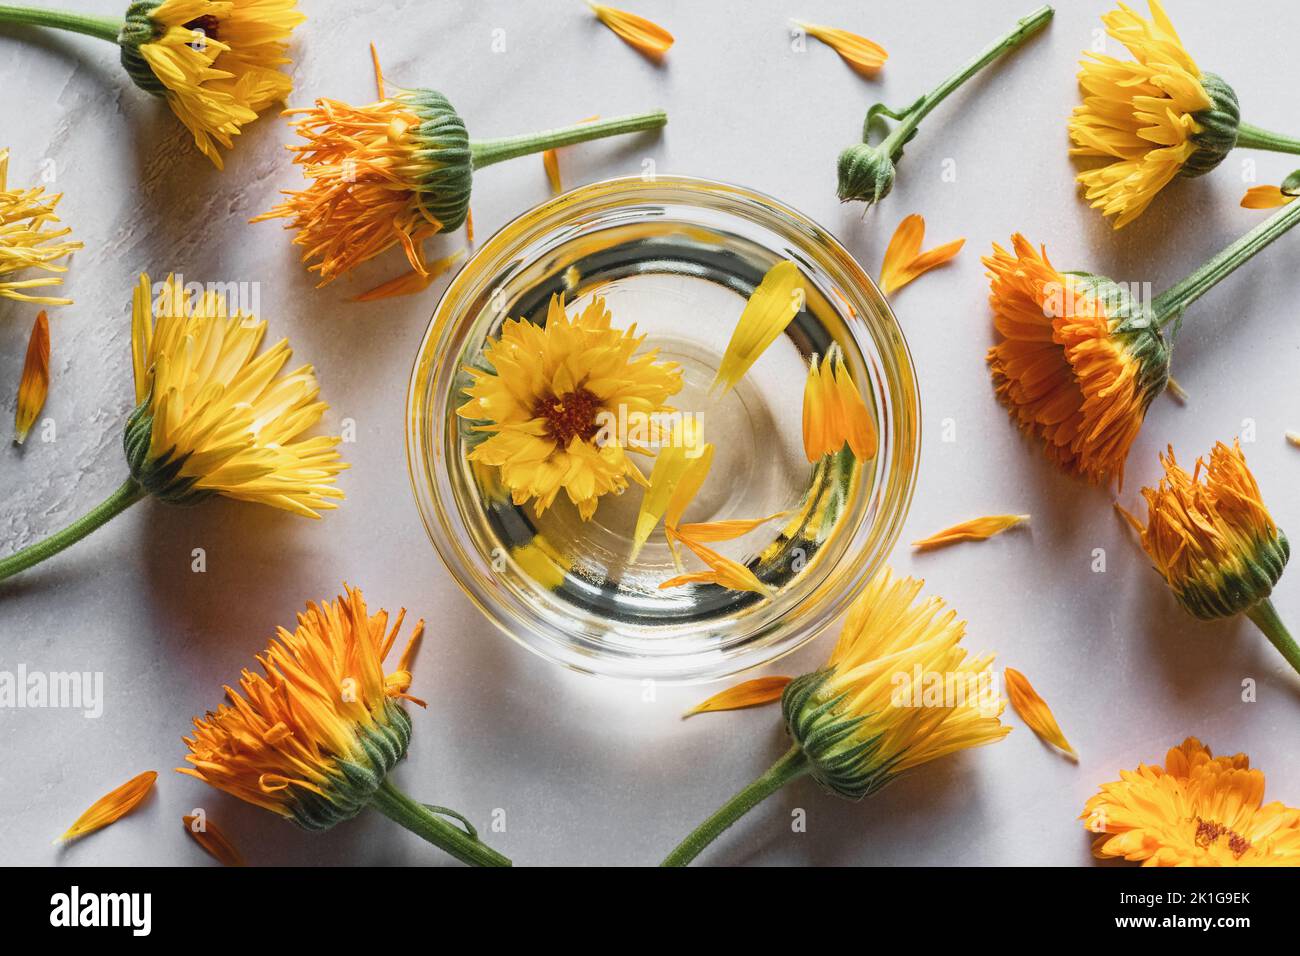 Huile de Calendula maison infusée dans un bol, fleurs de marigold sur fond blanc, soins aux plantes Banque D'Images